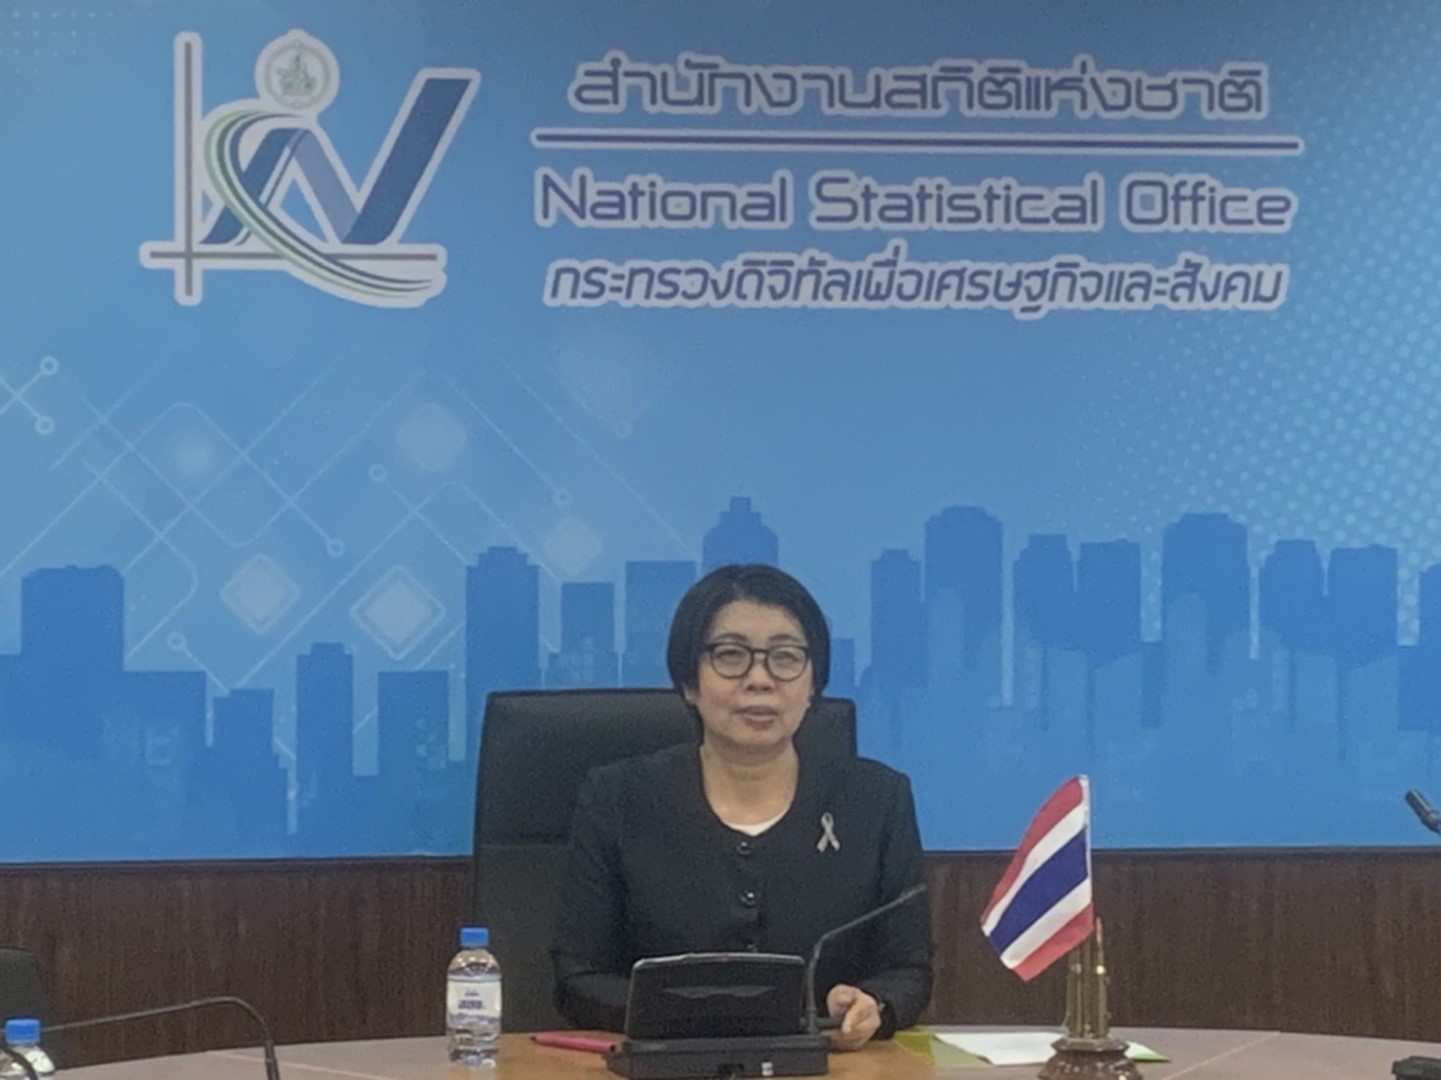 สำนักงานสถิติของประเทศเวียดนาม หรือ General Statistics Office of Vietnam เข้าศึกษาดูงาน Government Data Catalog และ Statistics Sharing Hub ของสำนักงานสถิติแห่งชาติในรูปแบบการประชุมออนไลน์ โดยความร่วมมือกับ UNESCAP  